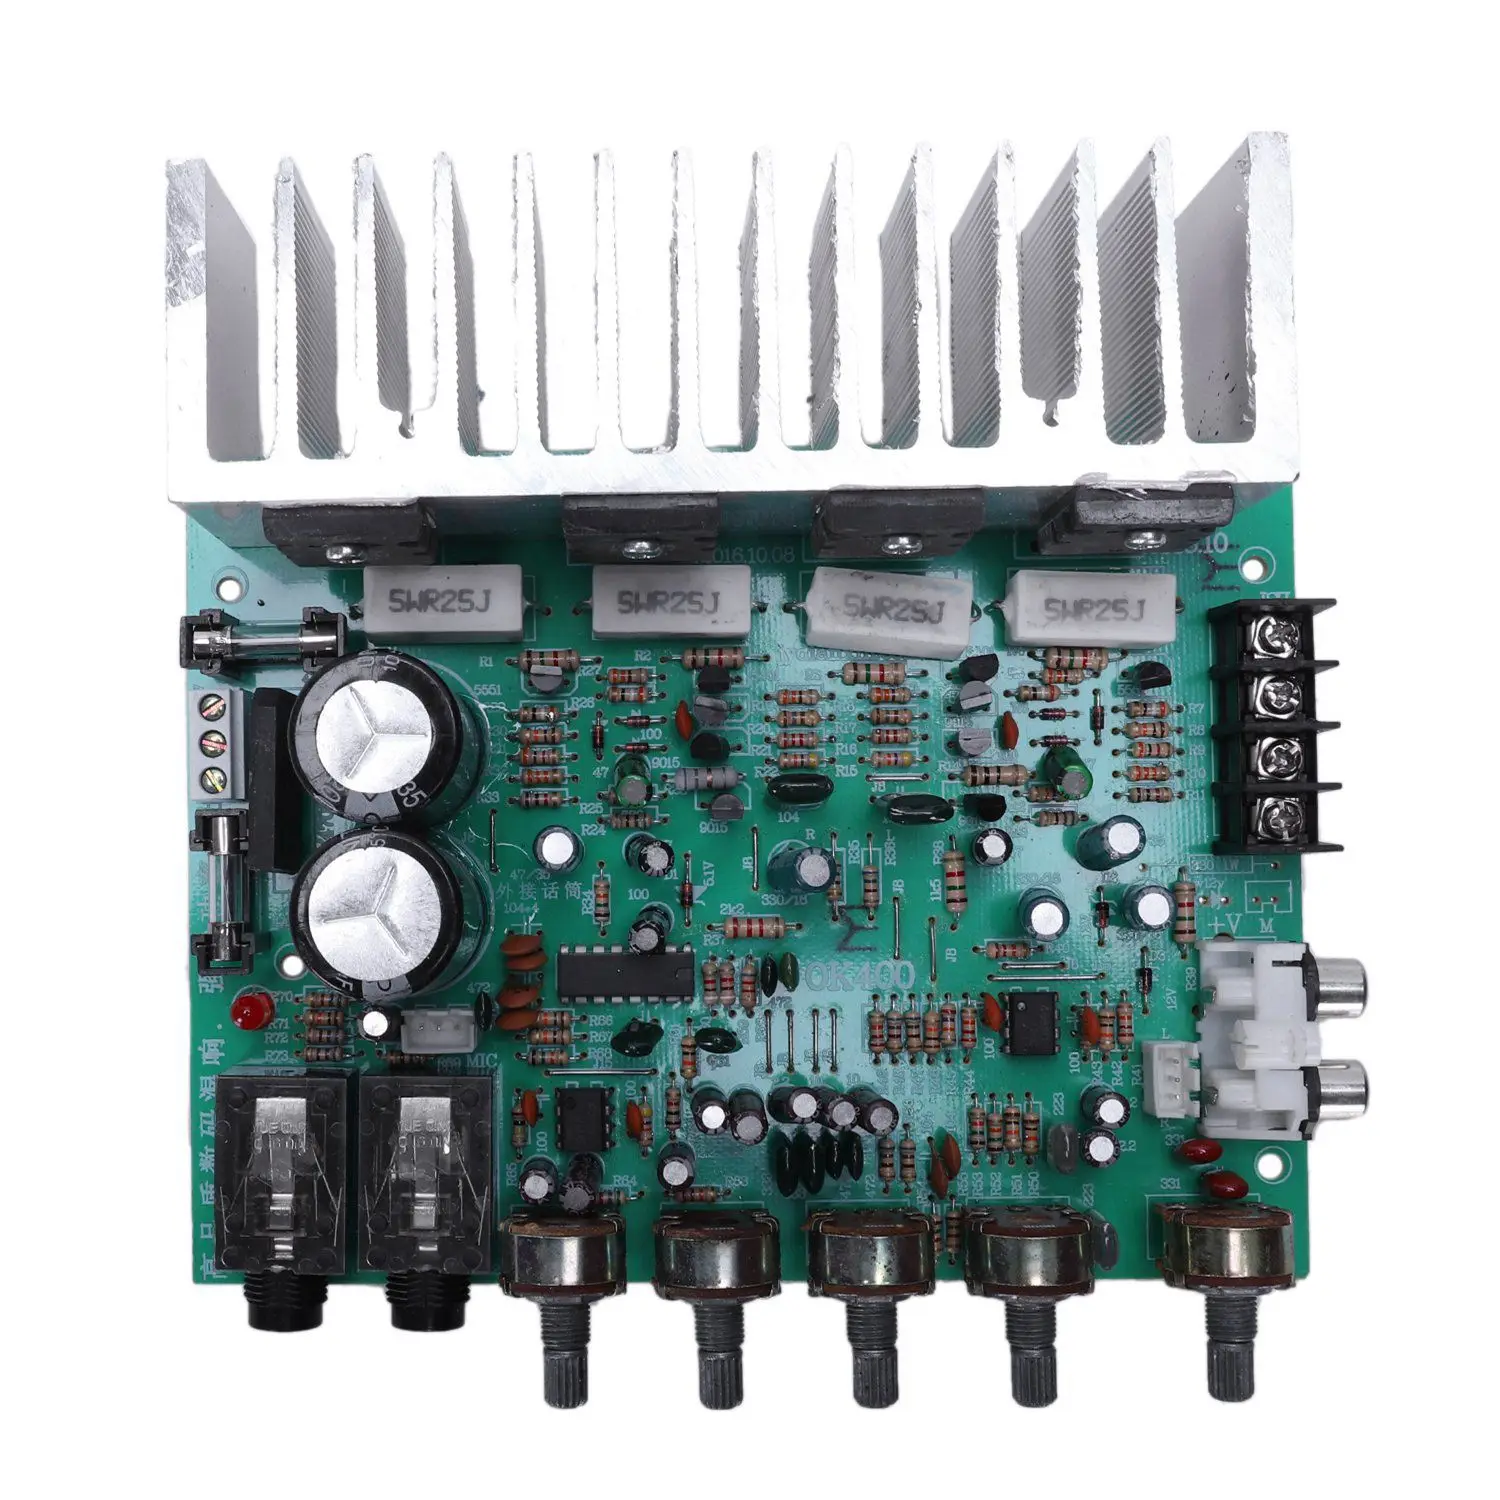 Аудио усилитель доска Hifi цифровой реверберации усилитель мощности 250 Вт X 2 2,0 аудио предусилитель заднего усиления с регулятором тона E3-00